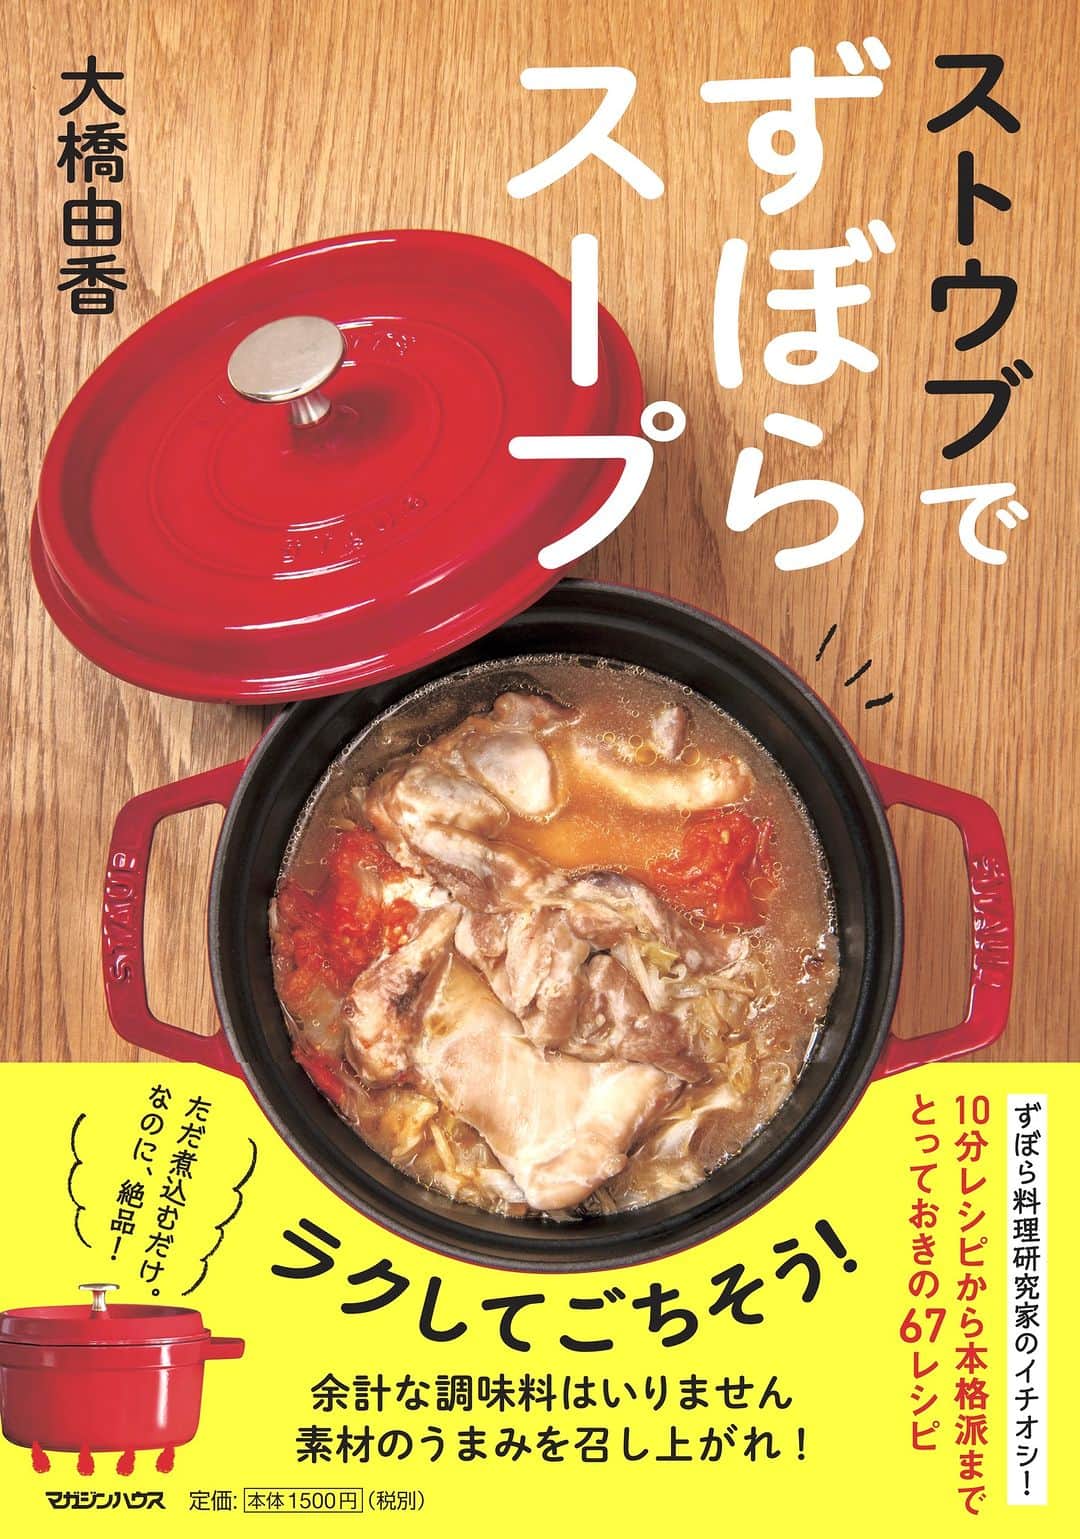 staub ストウブのインスタグラム：「【新刊紹介】  10月19日に料理研究家 大橋由香( @haruhigohan)さんの新刊 “ストウブでずぼらスープ” が発売されます。   本のテーマは ずばり “ずぼら”。ストウブまかせでただ煮込むだけなのに、素材の旨みがたっぷり味わえるスープが完成！ 10分レシピから本格スープまで、とっておきの67品が紹介されています。   “ずぼら” スープレシピは、ストウブが食材の持つ旨みや甘みをぎゅっと引き出してくれるので、調味料は必要最低限におさえられます。さらに、理想的な組み合わせと言われる「主菜」「副菜」「汁物」が一皿でまかなえてしまうものばかり。忙しい日でも、これに「主食」のご飯やパンなどを添えれば、一汁一飯で心も体もほっとできること間違いなしです。    ストウブでずぼらスープ  ・著者名 大橋由香  ・出版社名 マガジンハウス  ・価格 1,650円 (税込)  ・発売日 2023/10/19  ・ISBNコード : 978-4838732524  #STAUB #ストウブ」